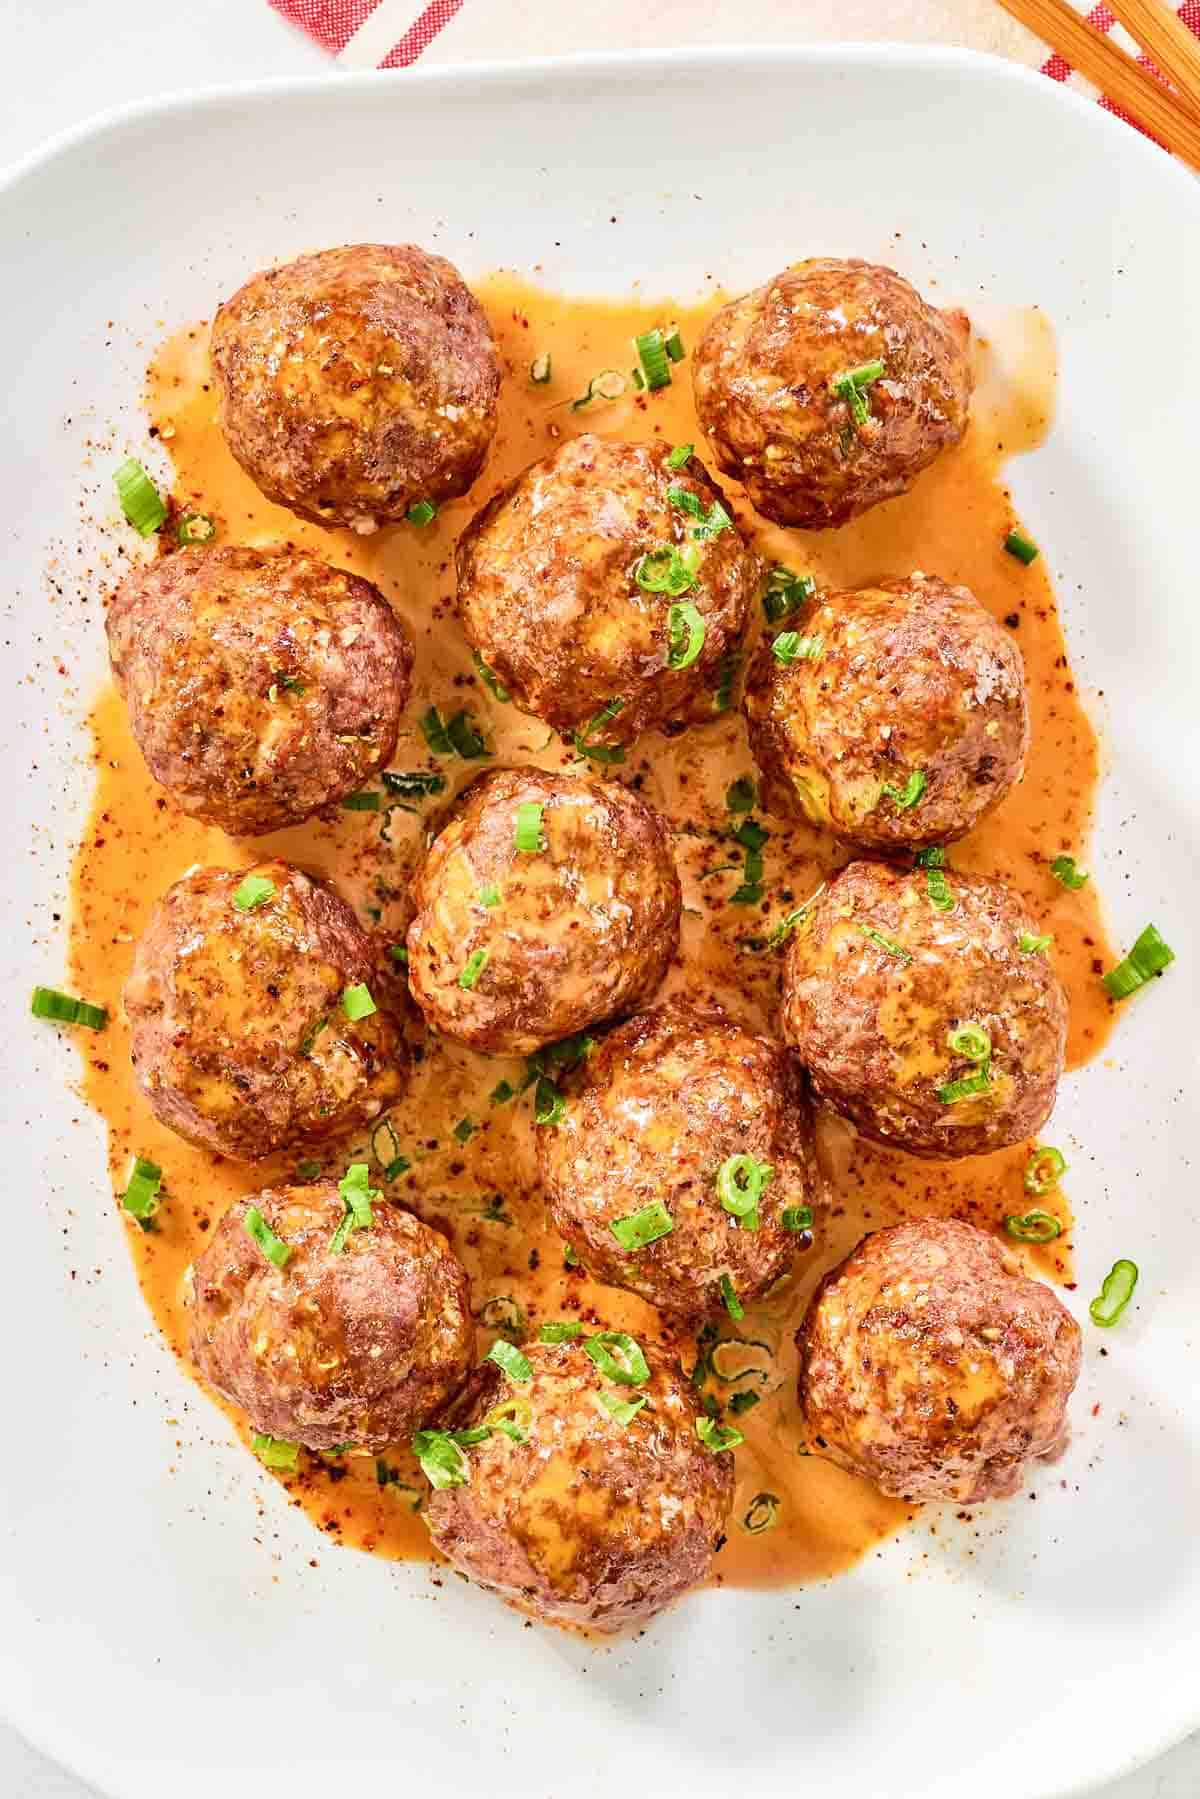 Firecracker meatballs with sauce on a platter.